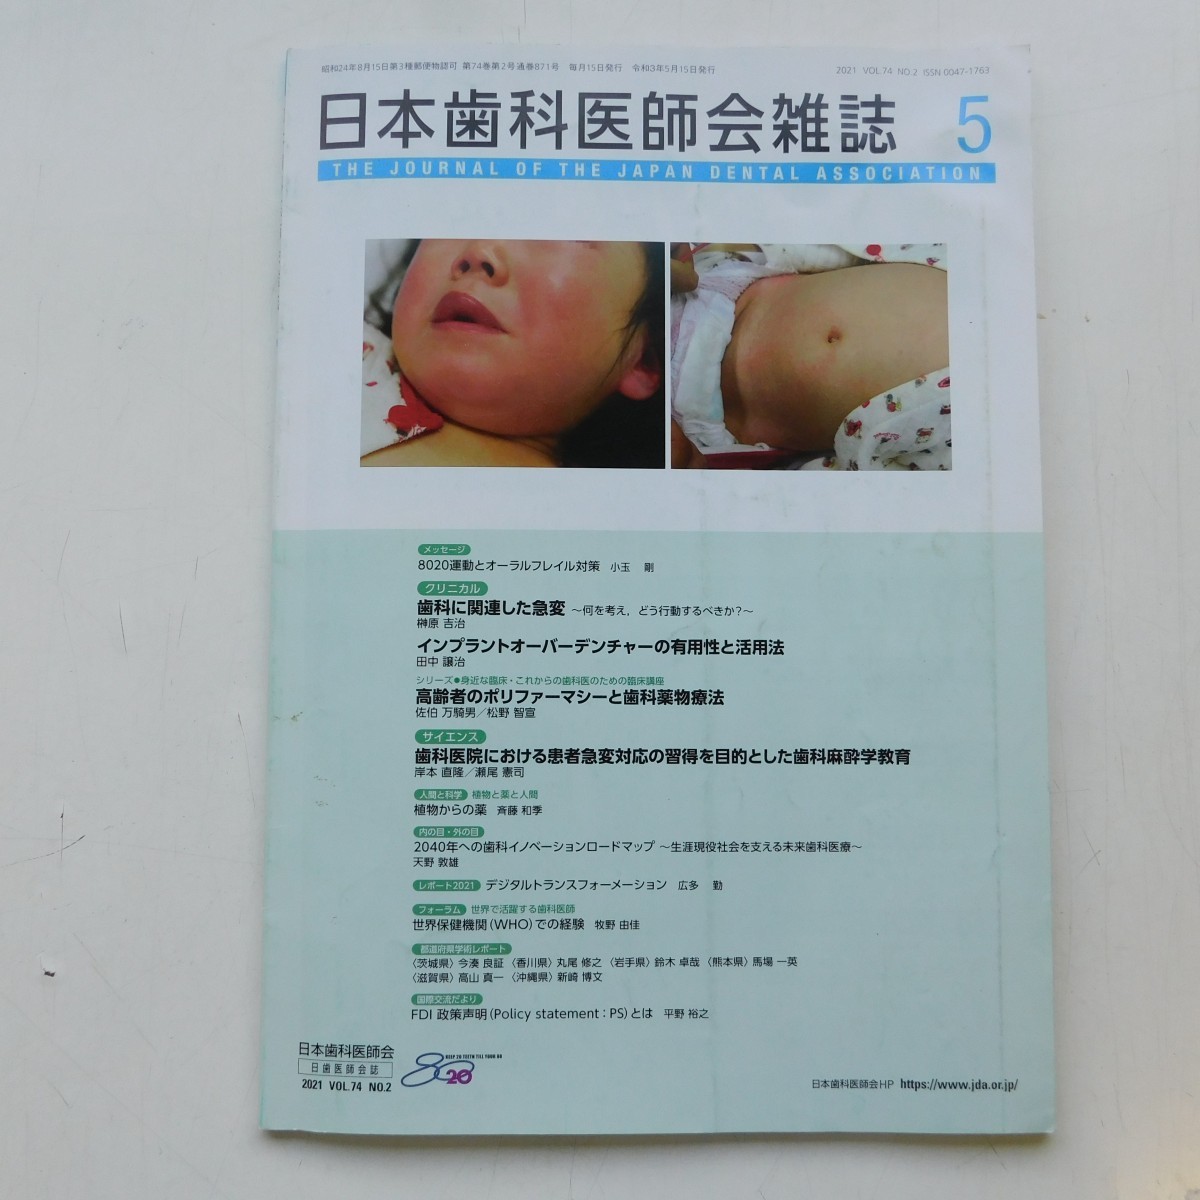 特2 53121 / 日本歯科医師会雑誌 2021年5月号 歯科に関連した急変 歯科医院における患者急変対応の習慣を目的とした歯科麻酔学教育_画像1